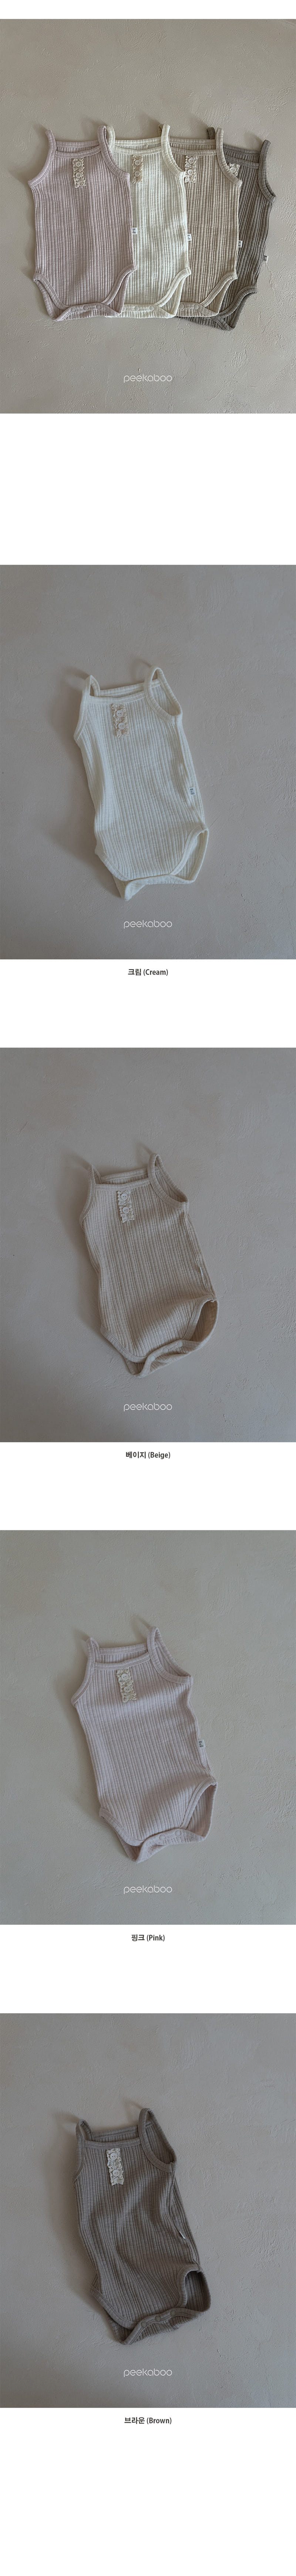 Peekaboo - Korean Baby Fashion - #babygirlfashion - Rene Body Suit - 4